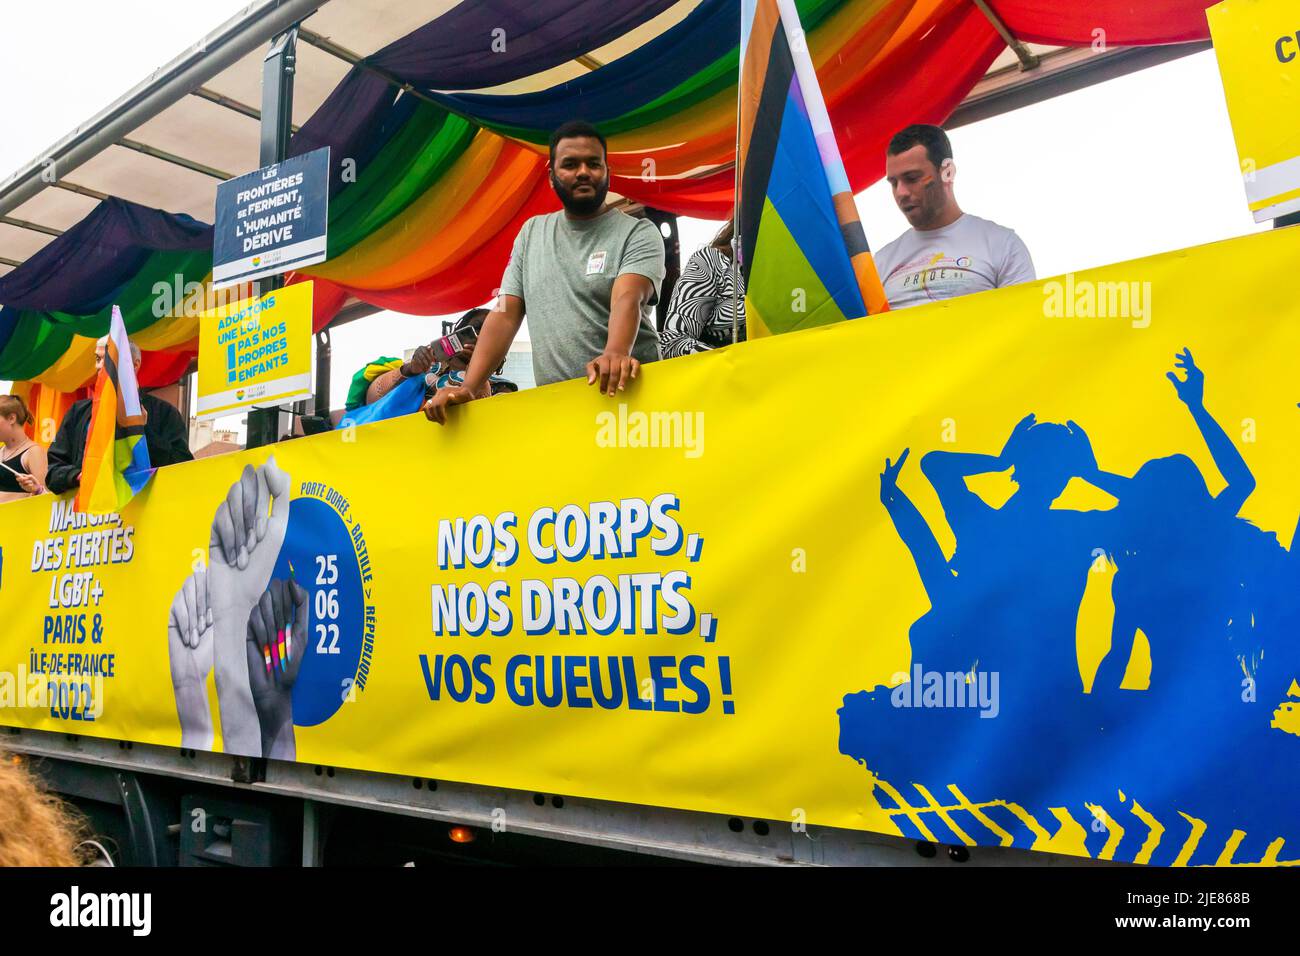 Paris, France, Homme dans un camion avec bannière de protestation dans la gay Pride / Marche LGBTQI, avec les couleurs du drapeau ukrainien, solidarité internationale, marche pour les droits des homosexuels, manifestation pour les droits des lgbt Banque D'Images